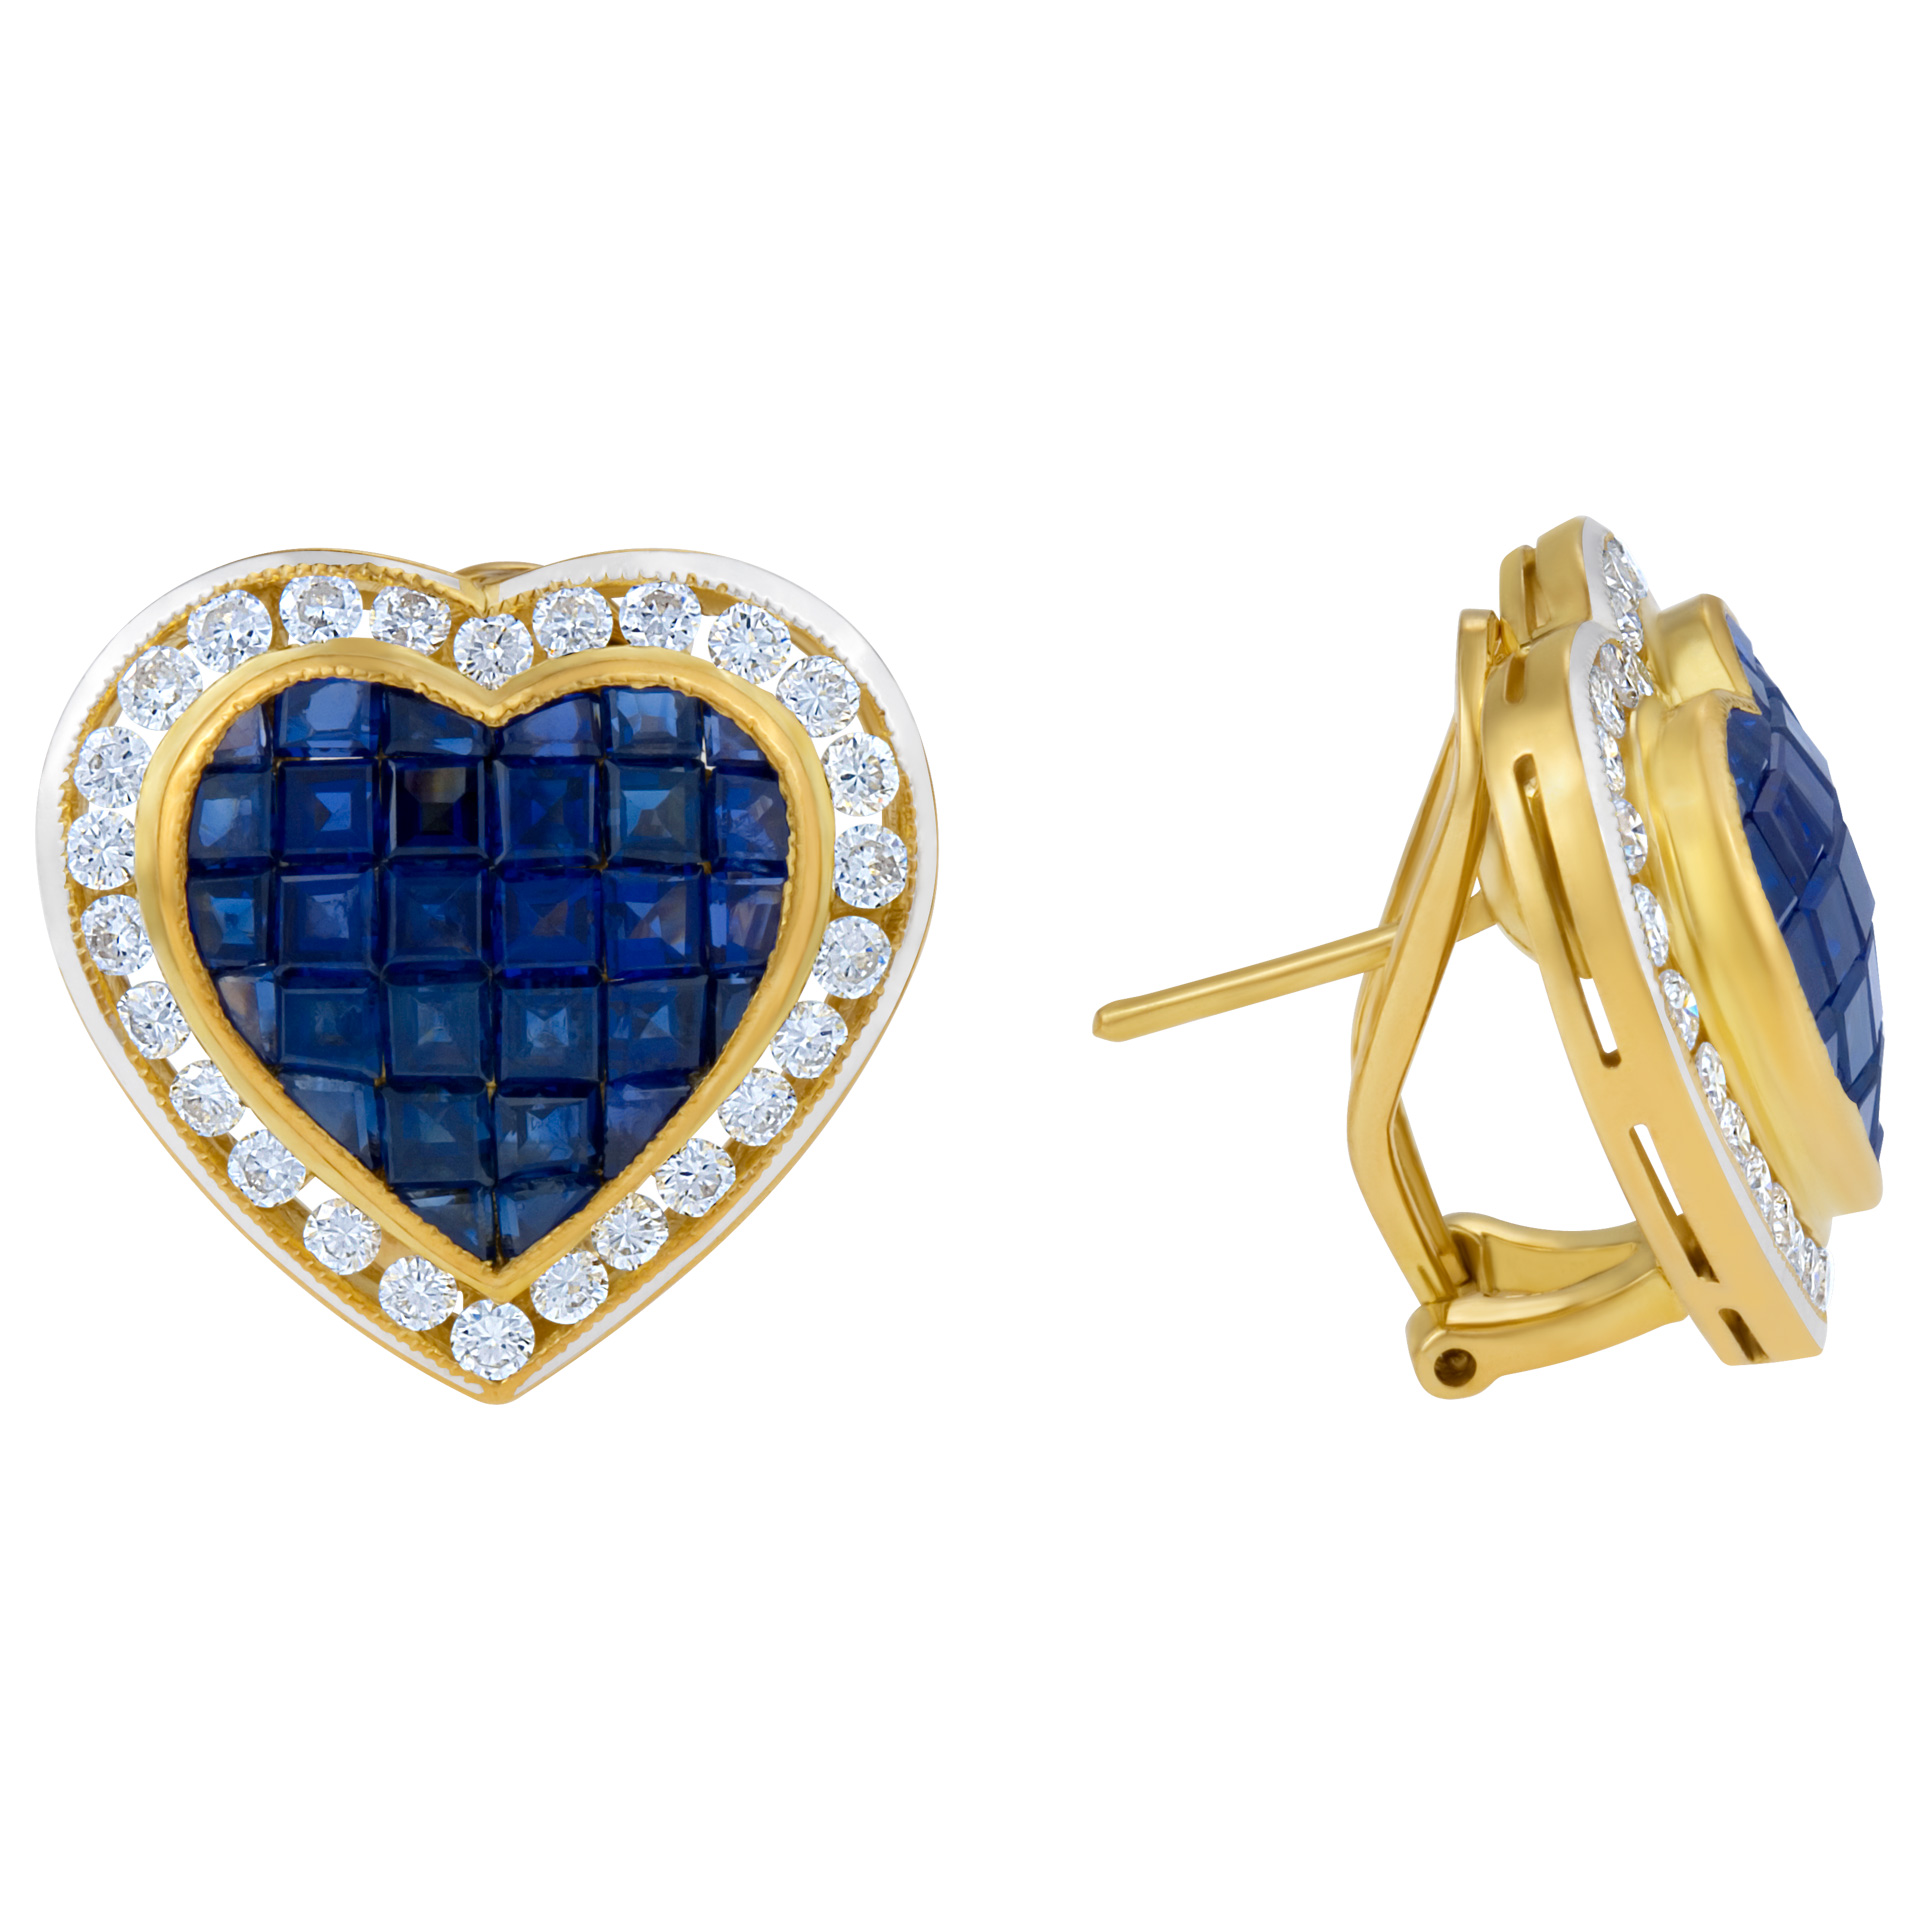 Heart shaped sapphire & diamond earrings in 18k